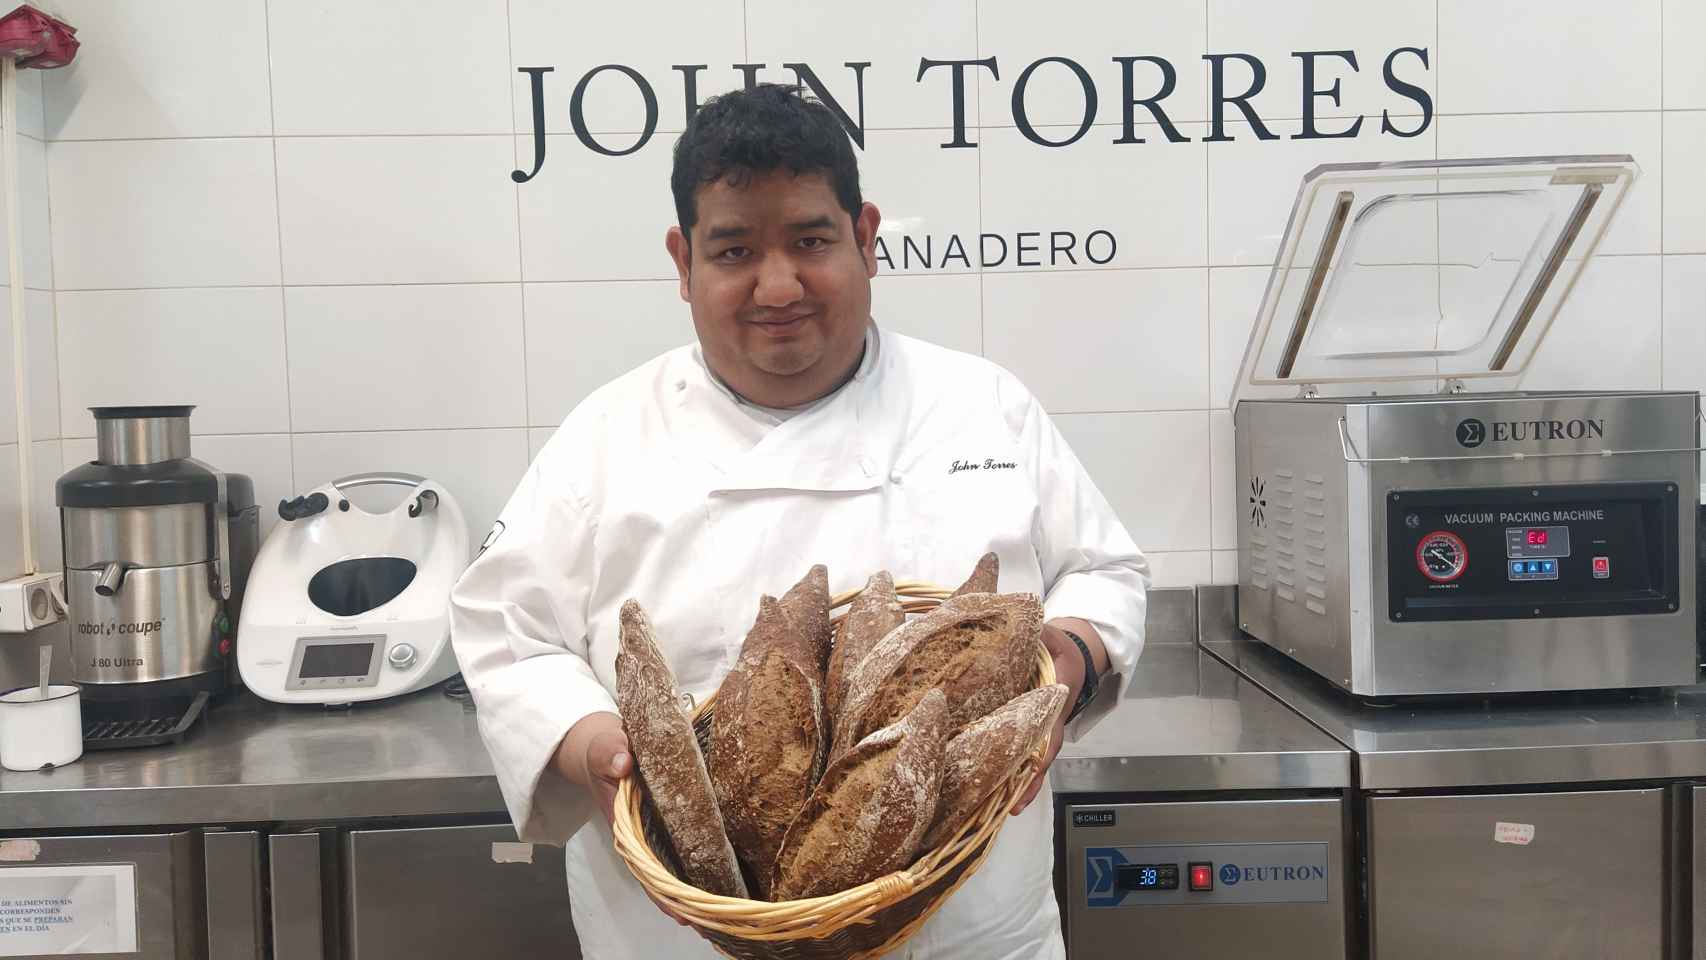 John Torres, que lleva unos 25 años siendo panadero, sujeta un cesto de pan artesanal.